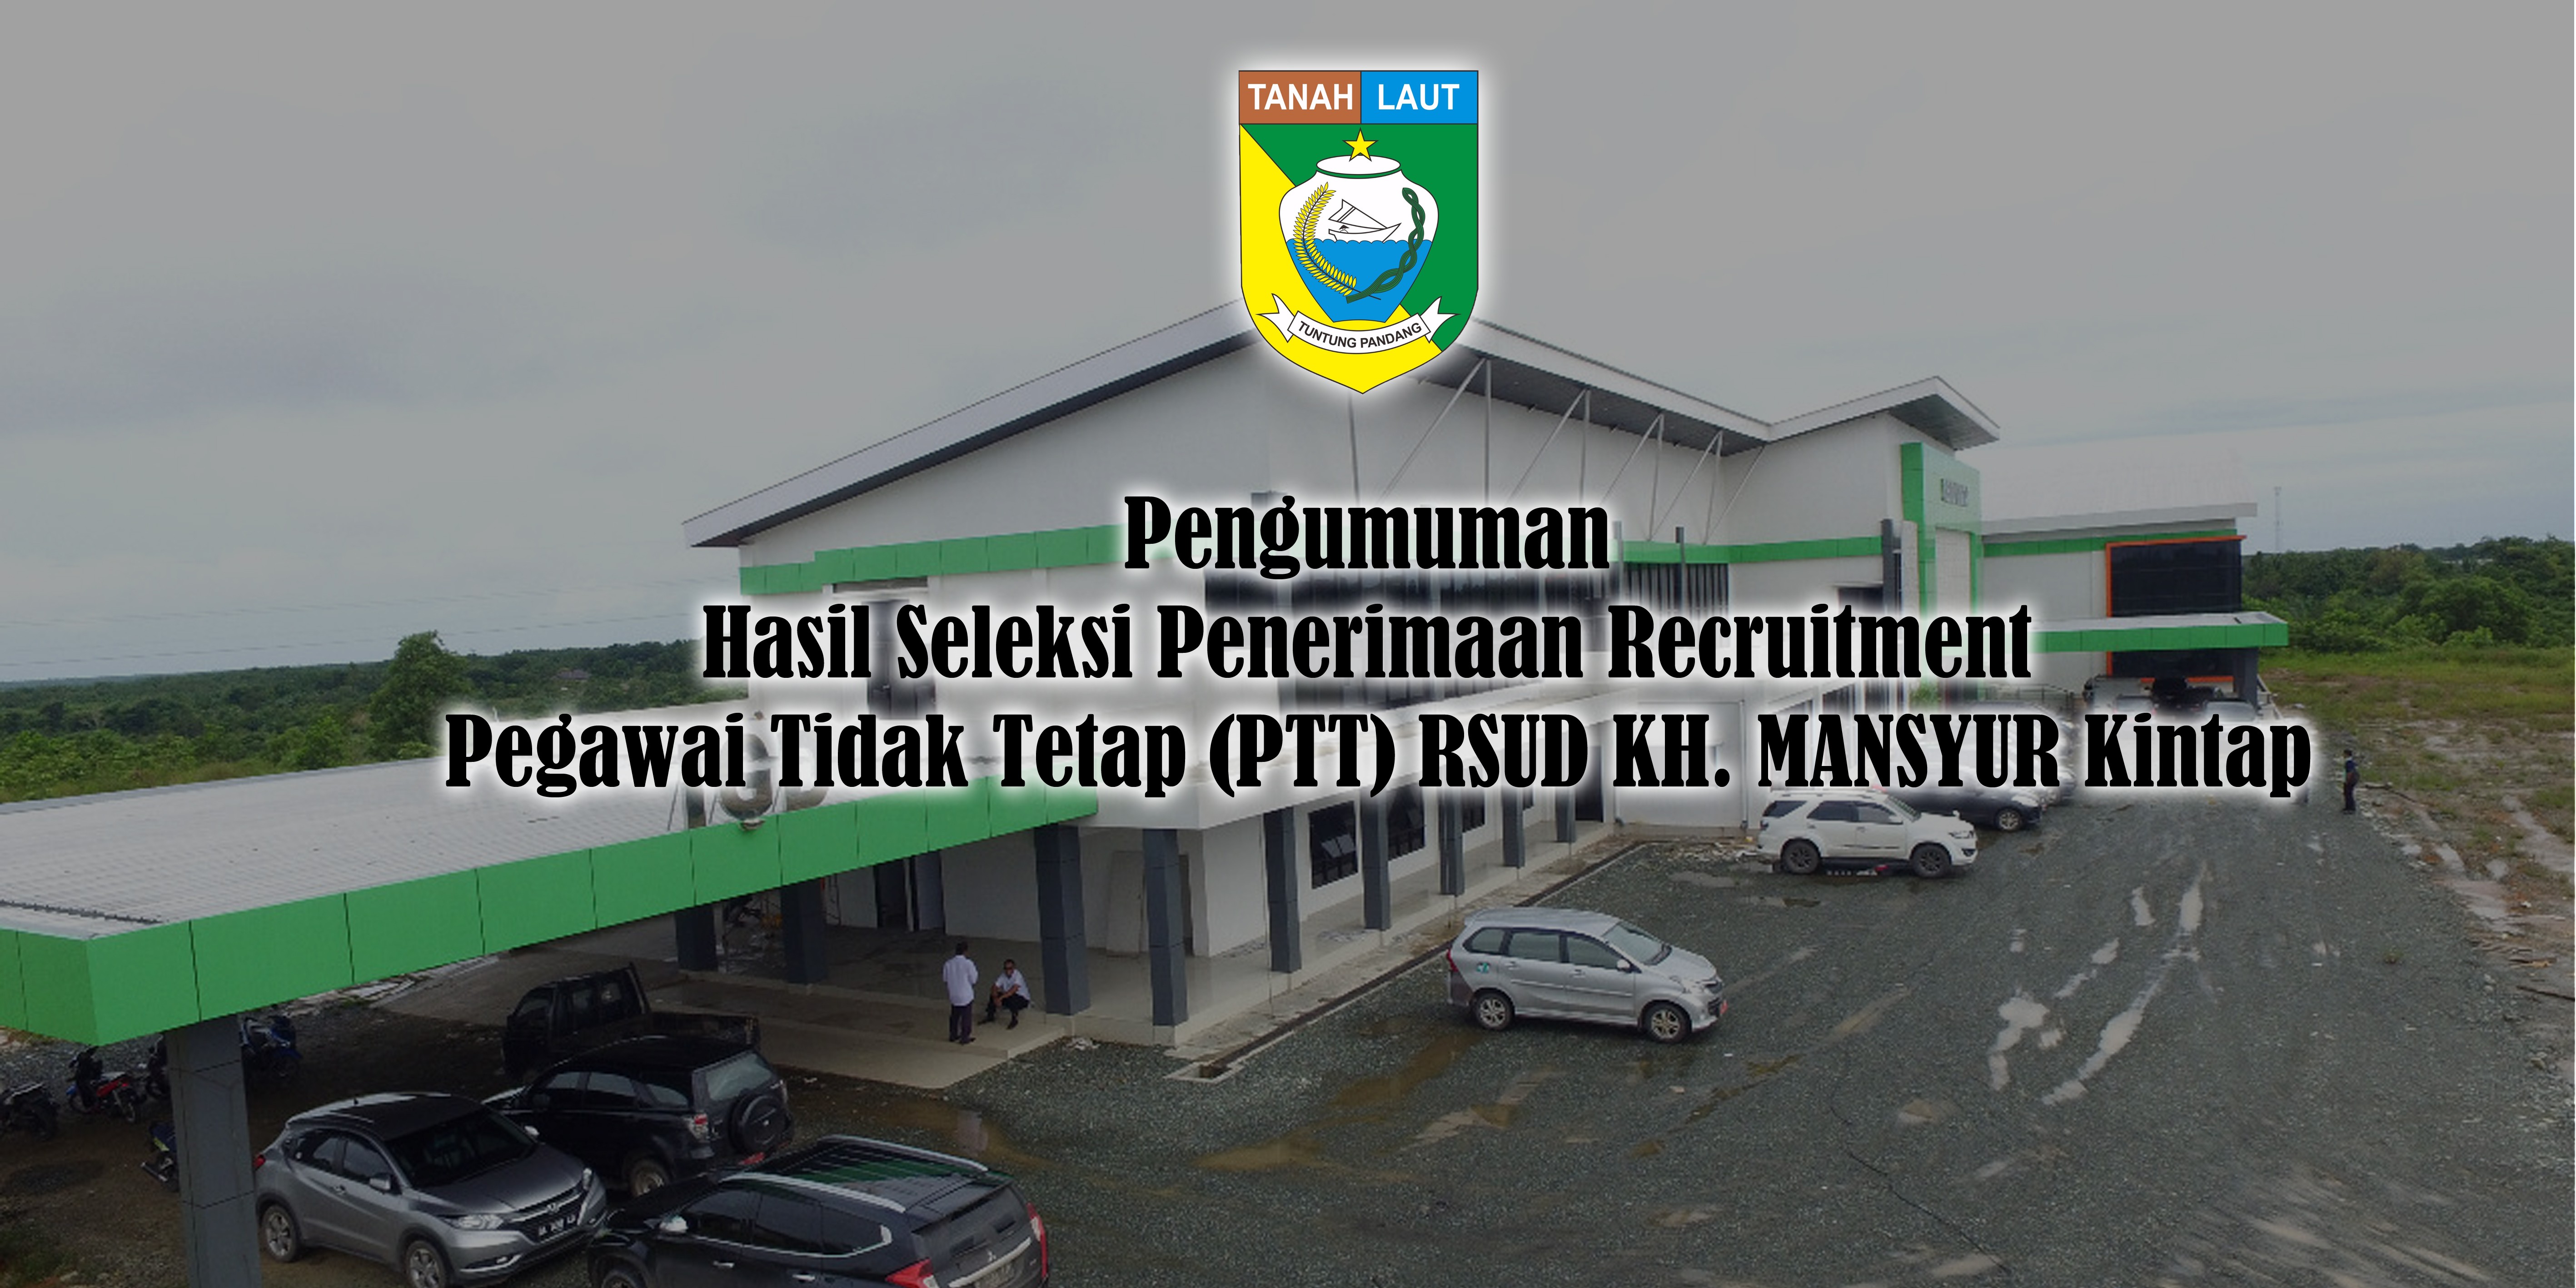 Pengumuman Hasil Seleksi Penerimaan Recruitment Pegawai Tidak Tetap (PTT) RSUD KH. MANSYUR Kintap